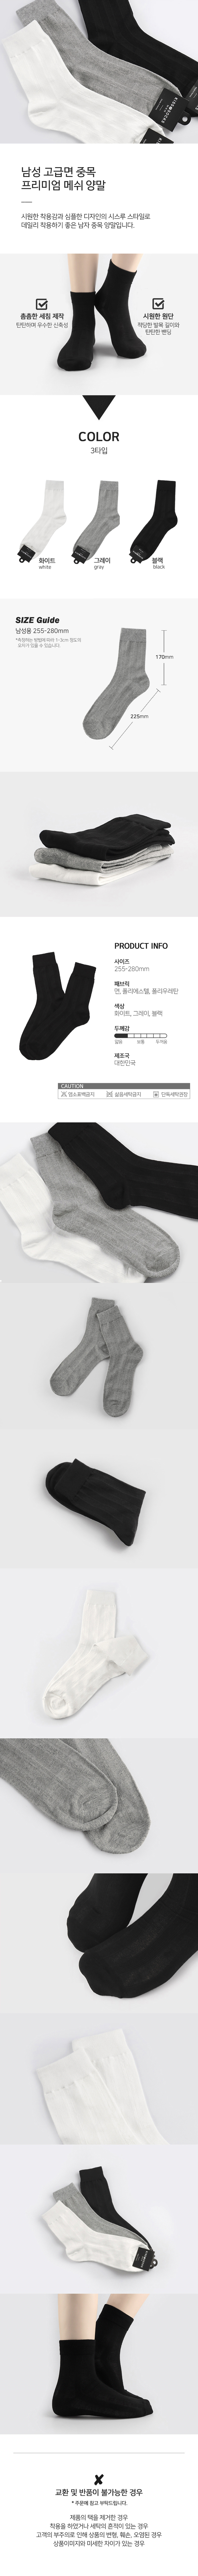 socks_00119.jpg